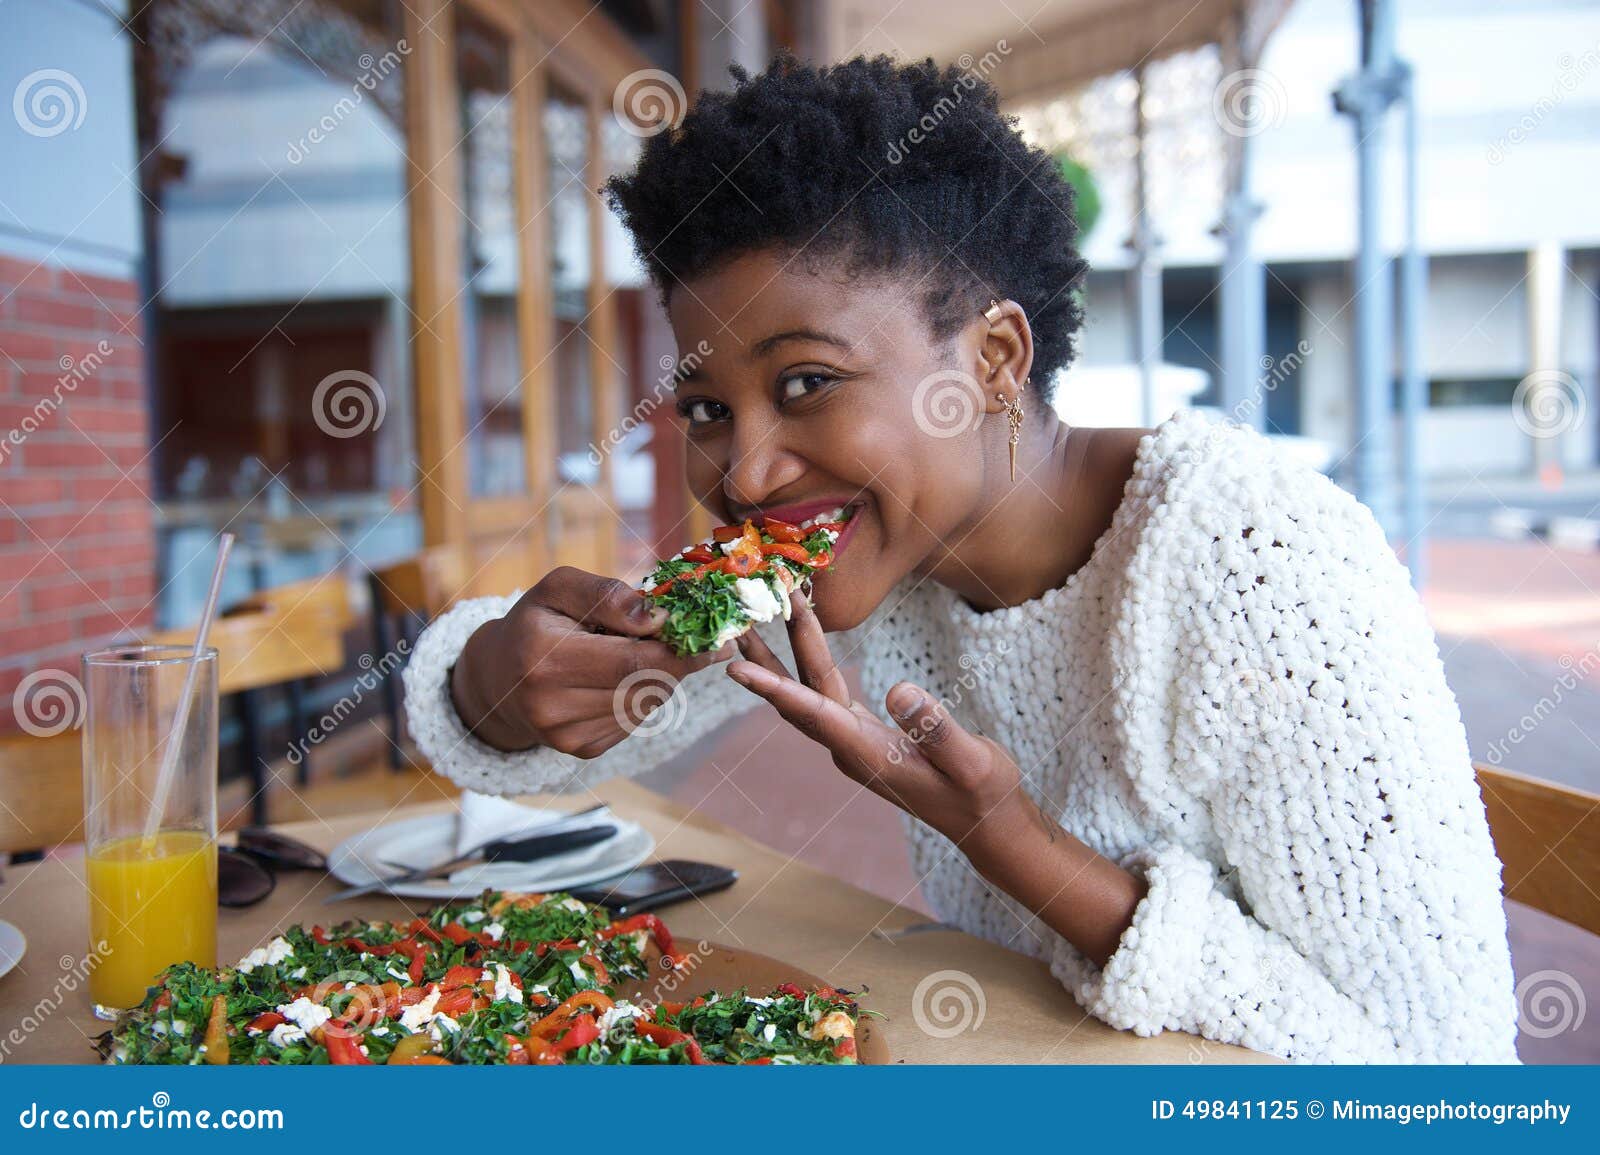 Ebony Eating